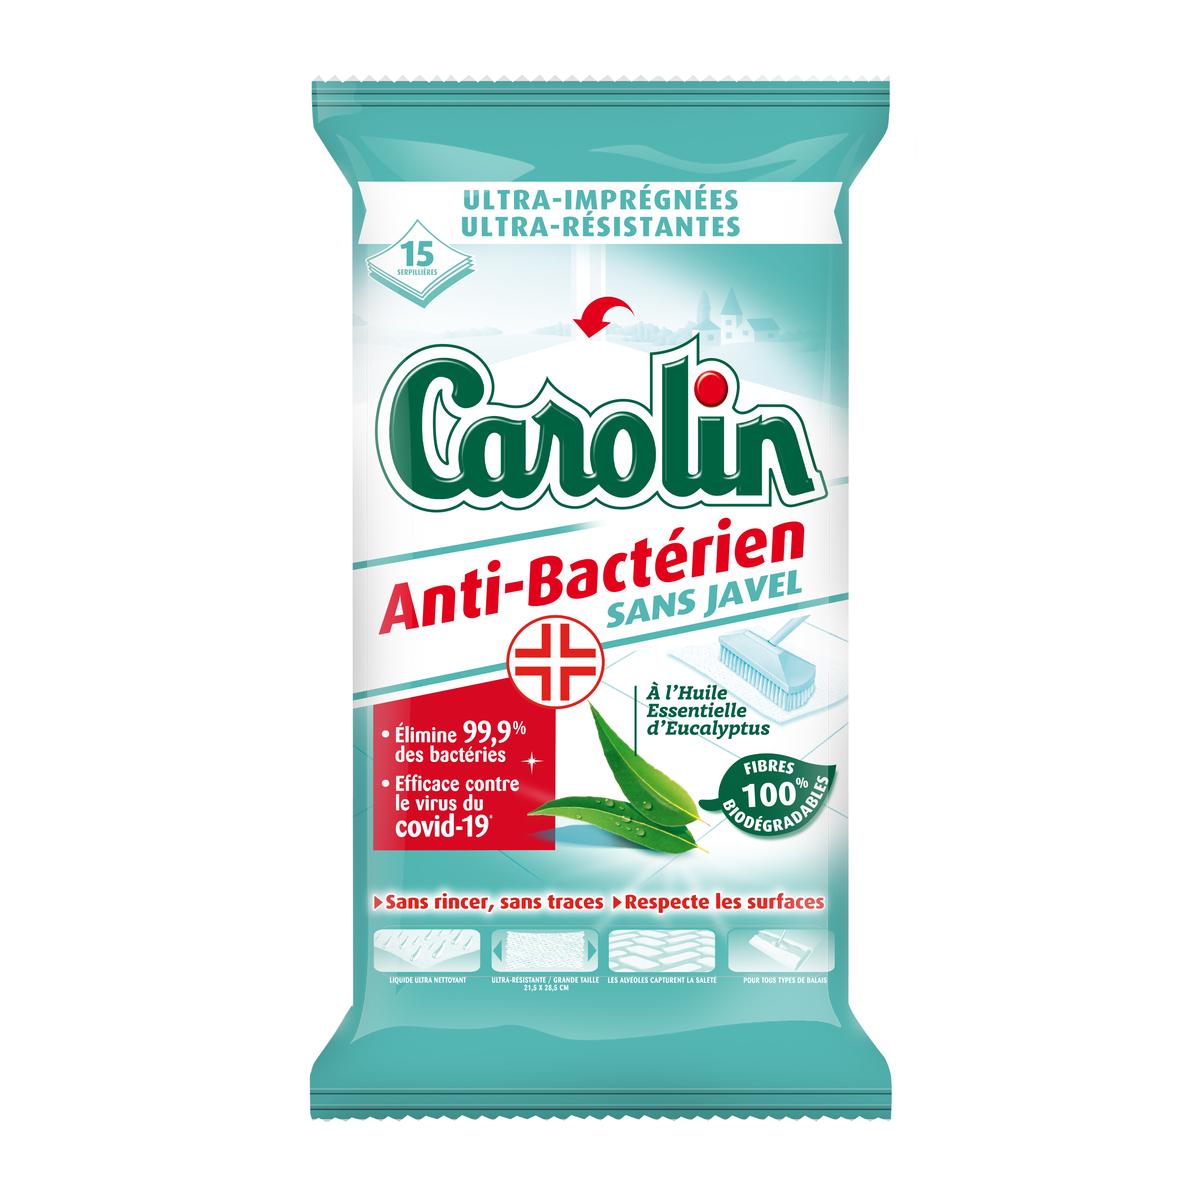 Lingettes sols Anti-bactériennes sans-javel - Carolin